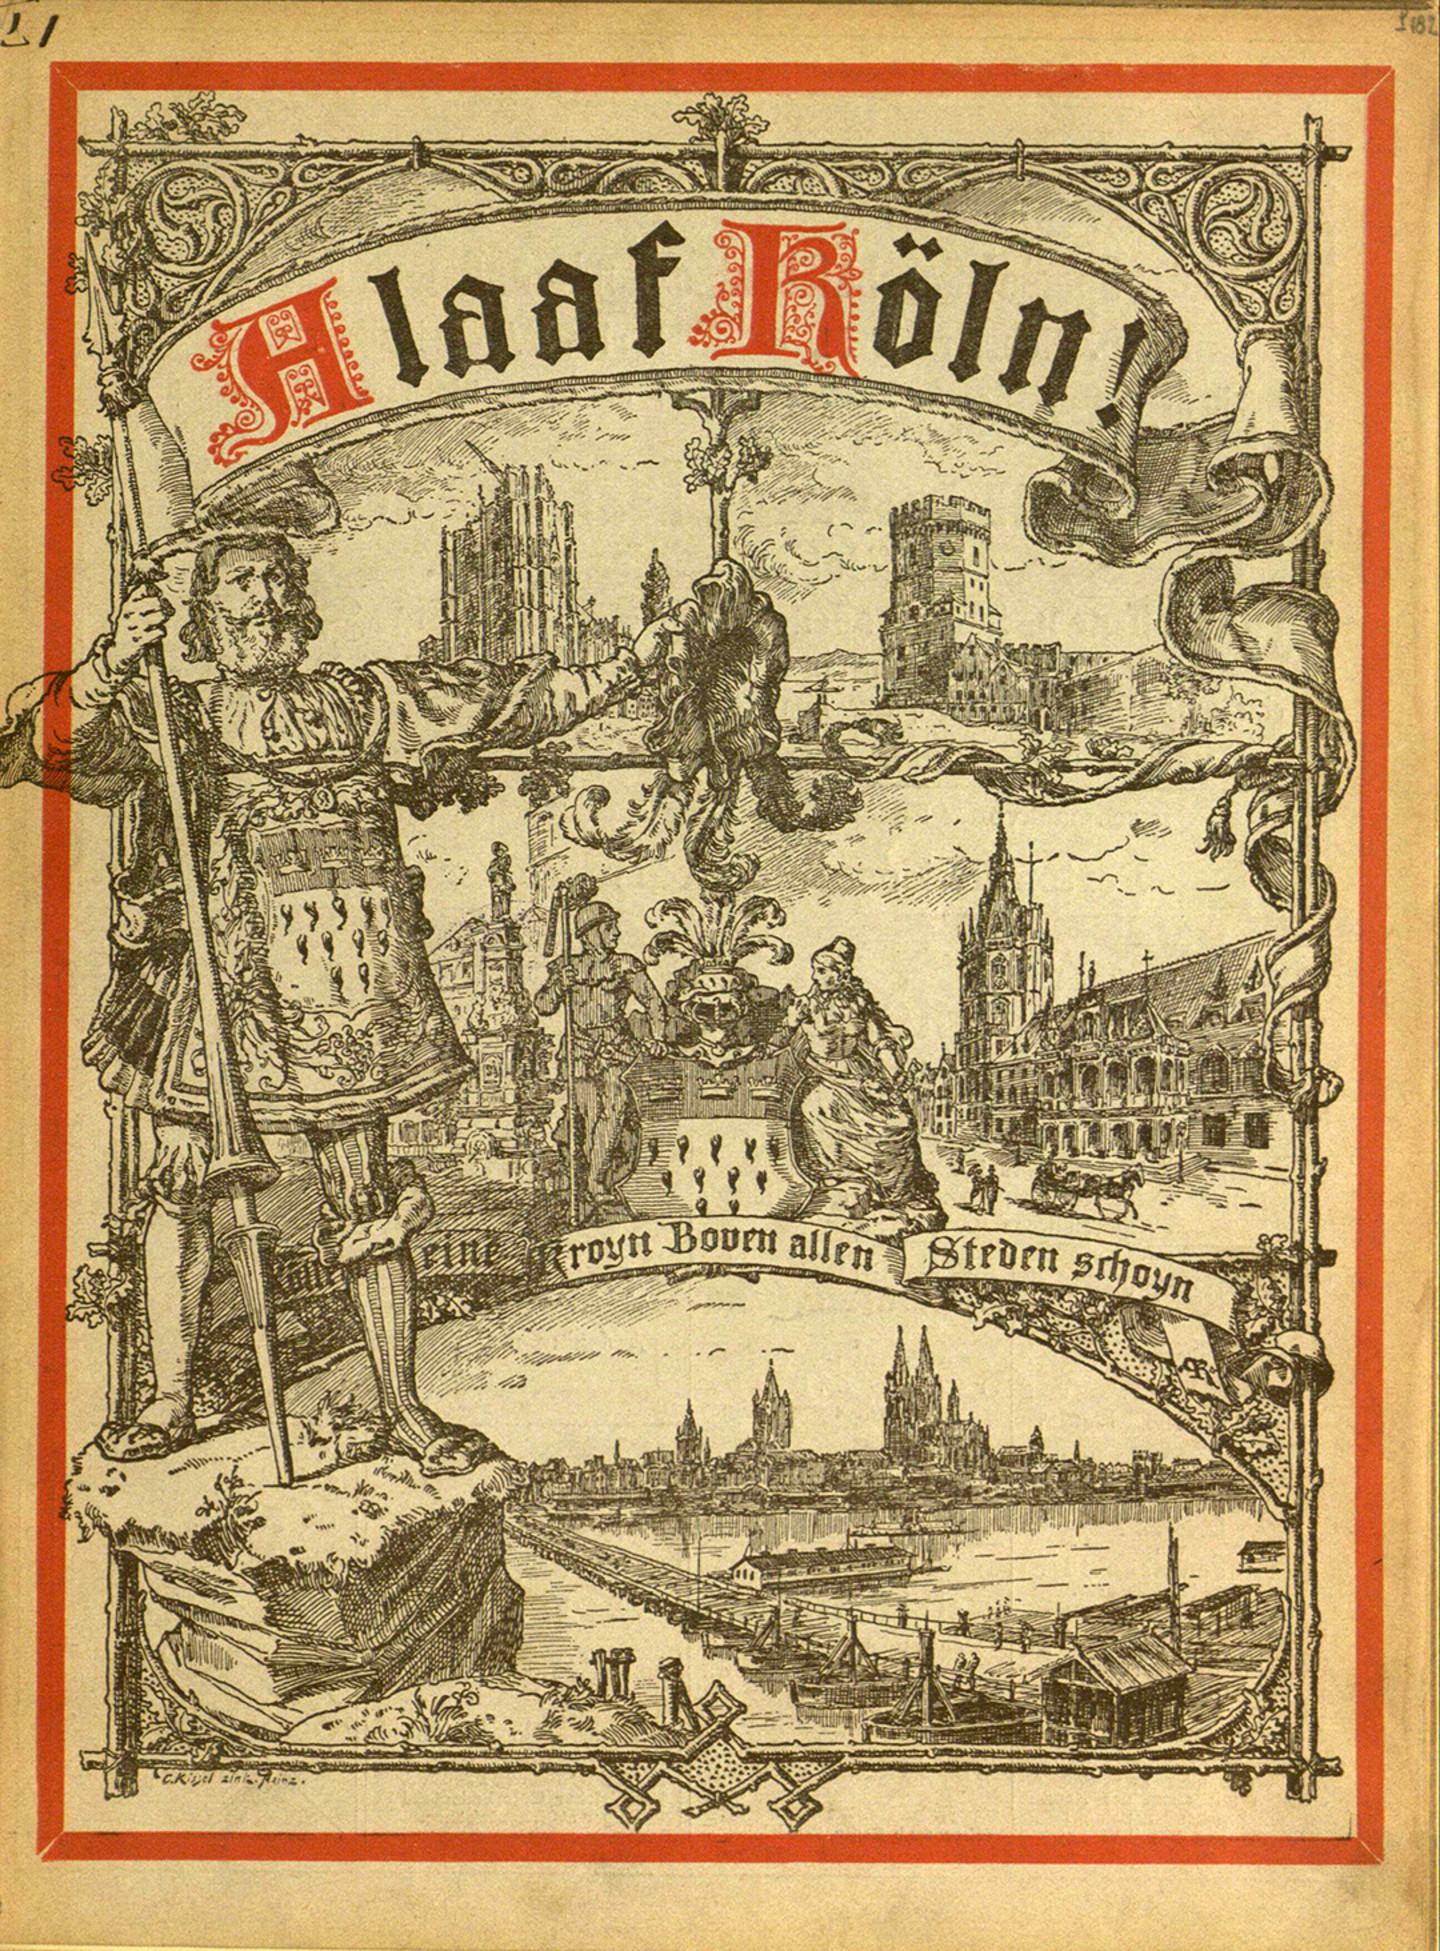 Das Titelblatt von Alaaf Köln, auf dem ein aufrecht stehender Mann abgebildet ist. Im Hintergrund sind Elemente des historischen Kölns abgebildet.